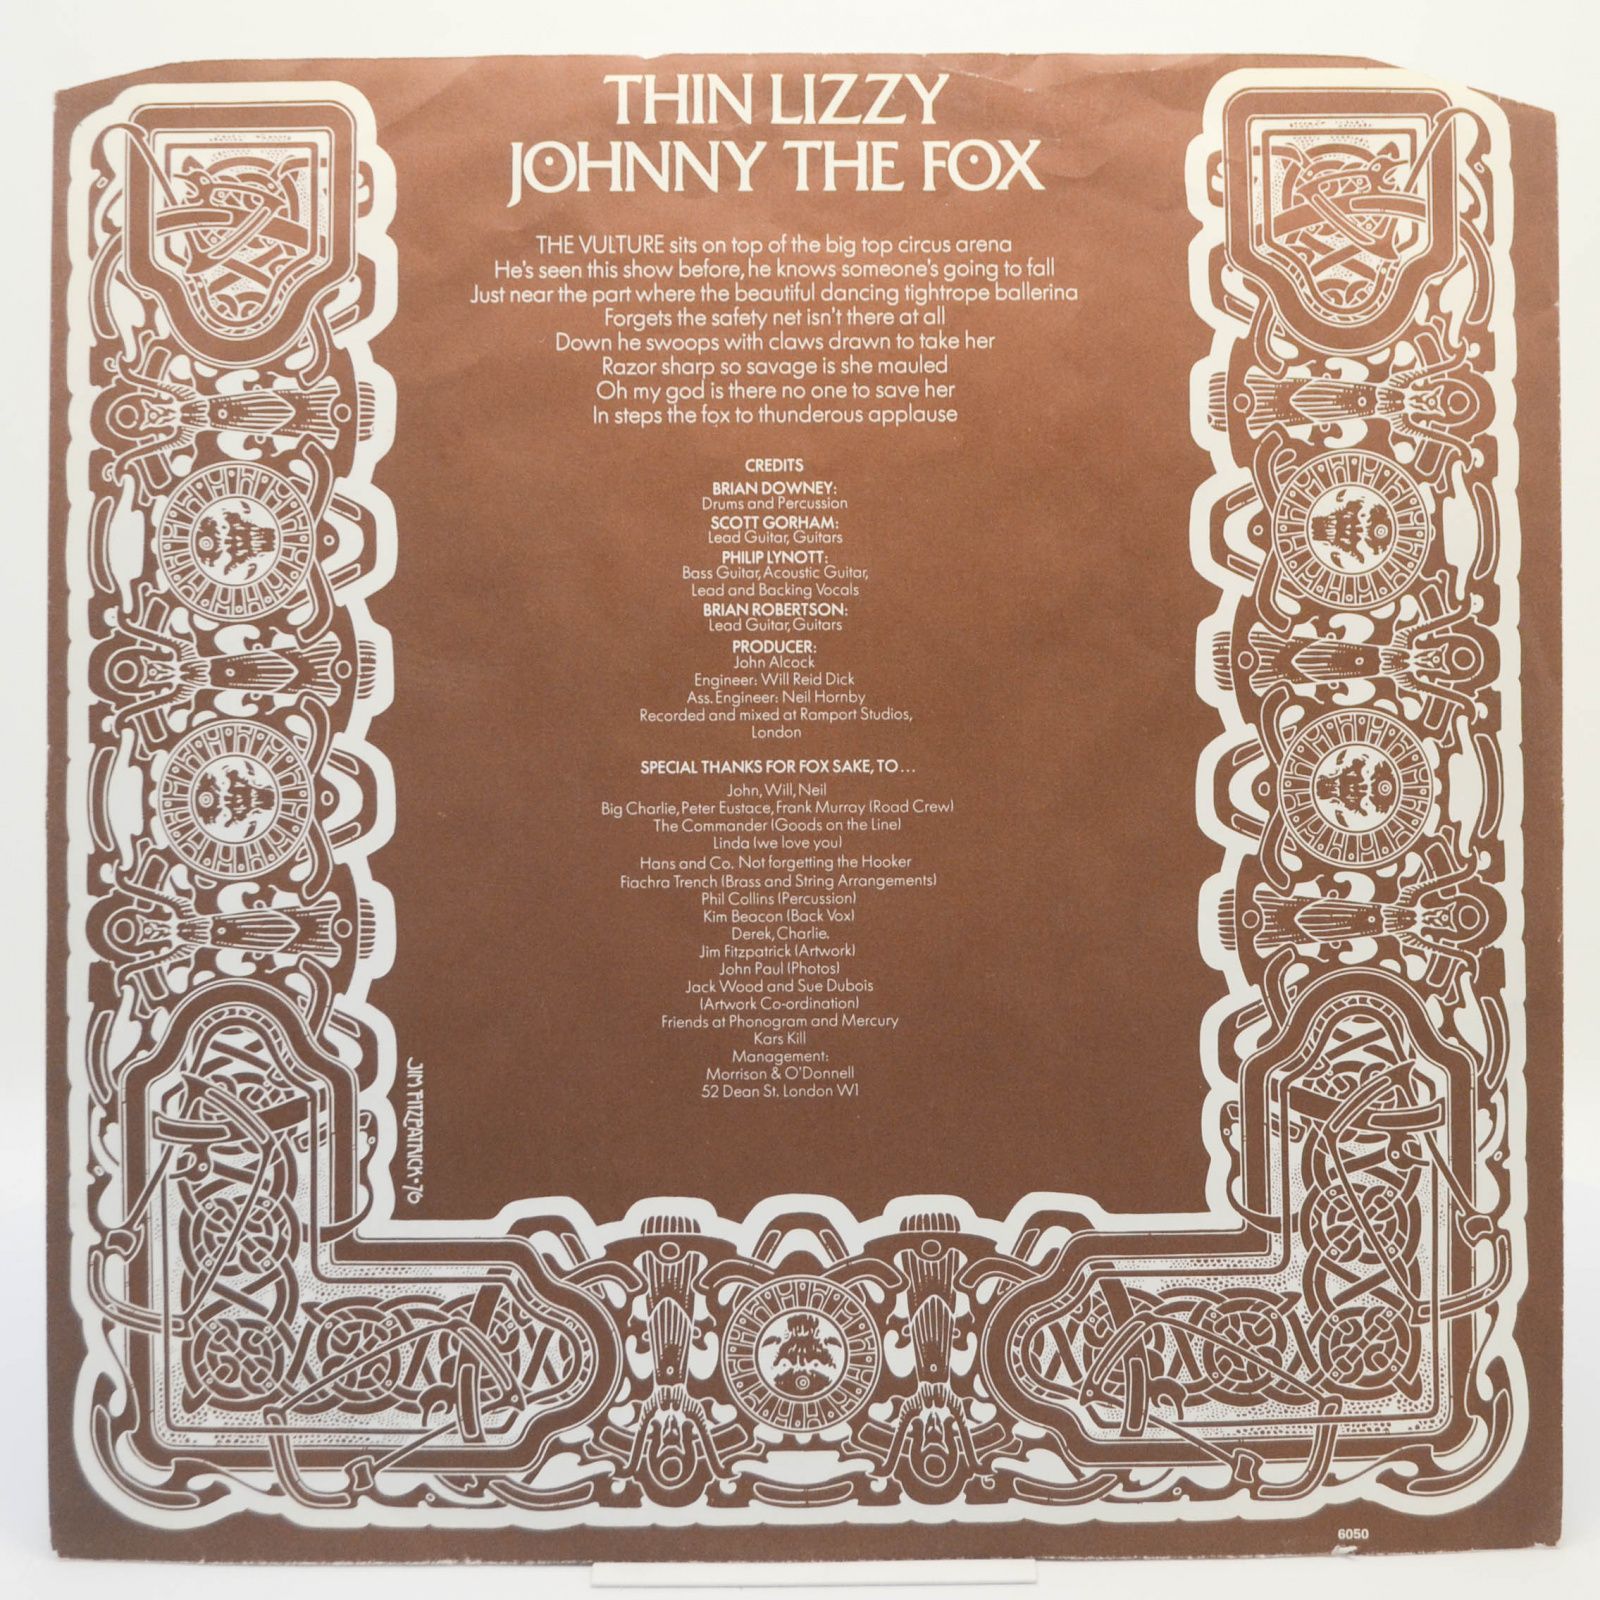 Thin Lizzy — Johnny The Fox, 1976